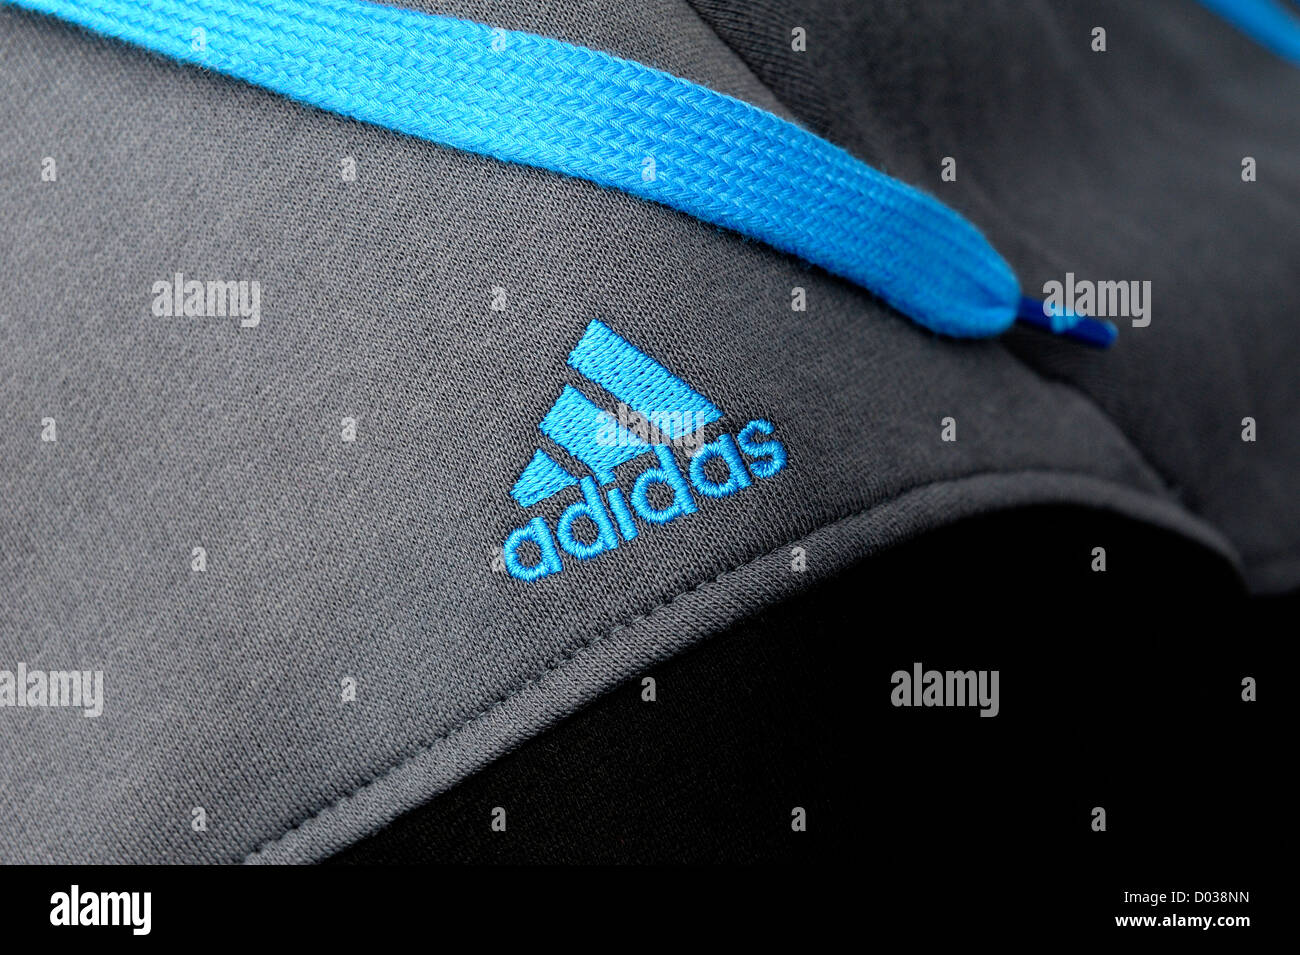 Intento Desobediencia Desnudo Logotipo de Adidas bordados en azul en un chándal top Fotografía de stock -  Alamy